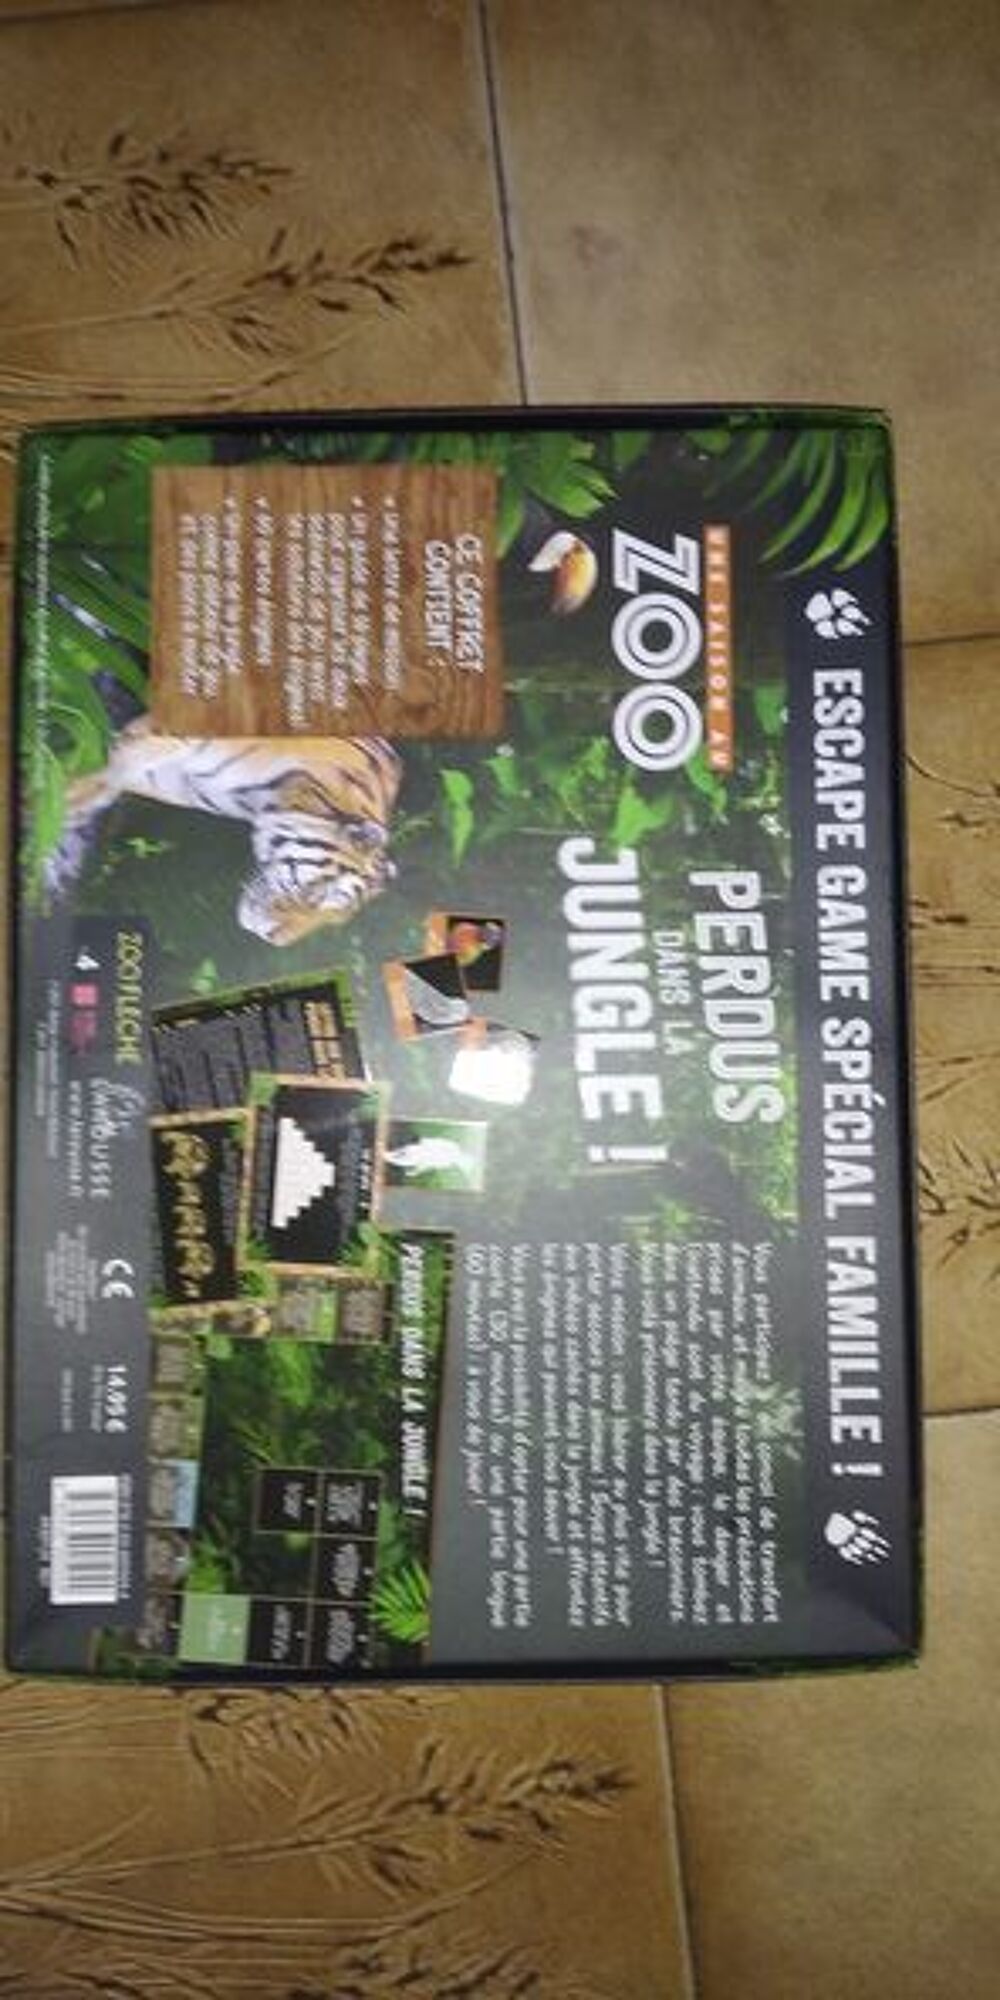 zoo perdus dans la jungle Jeux / jouets